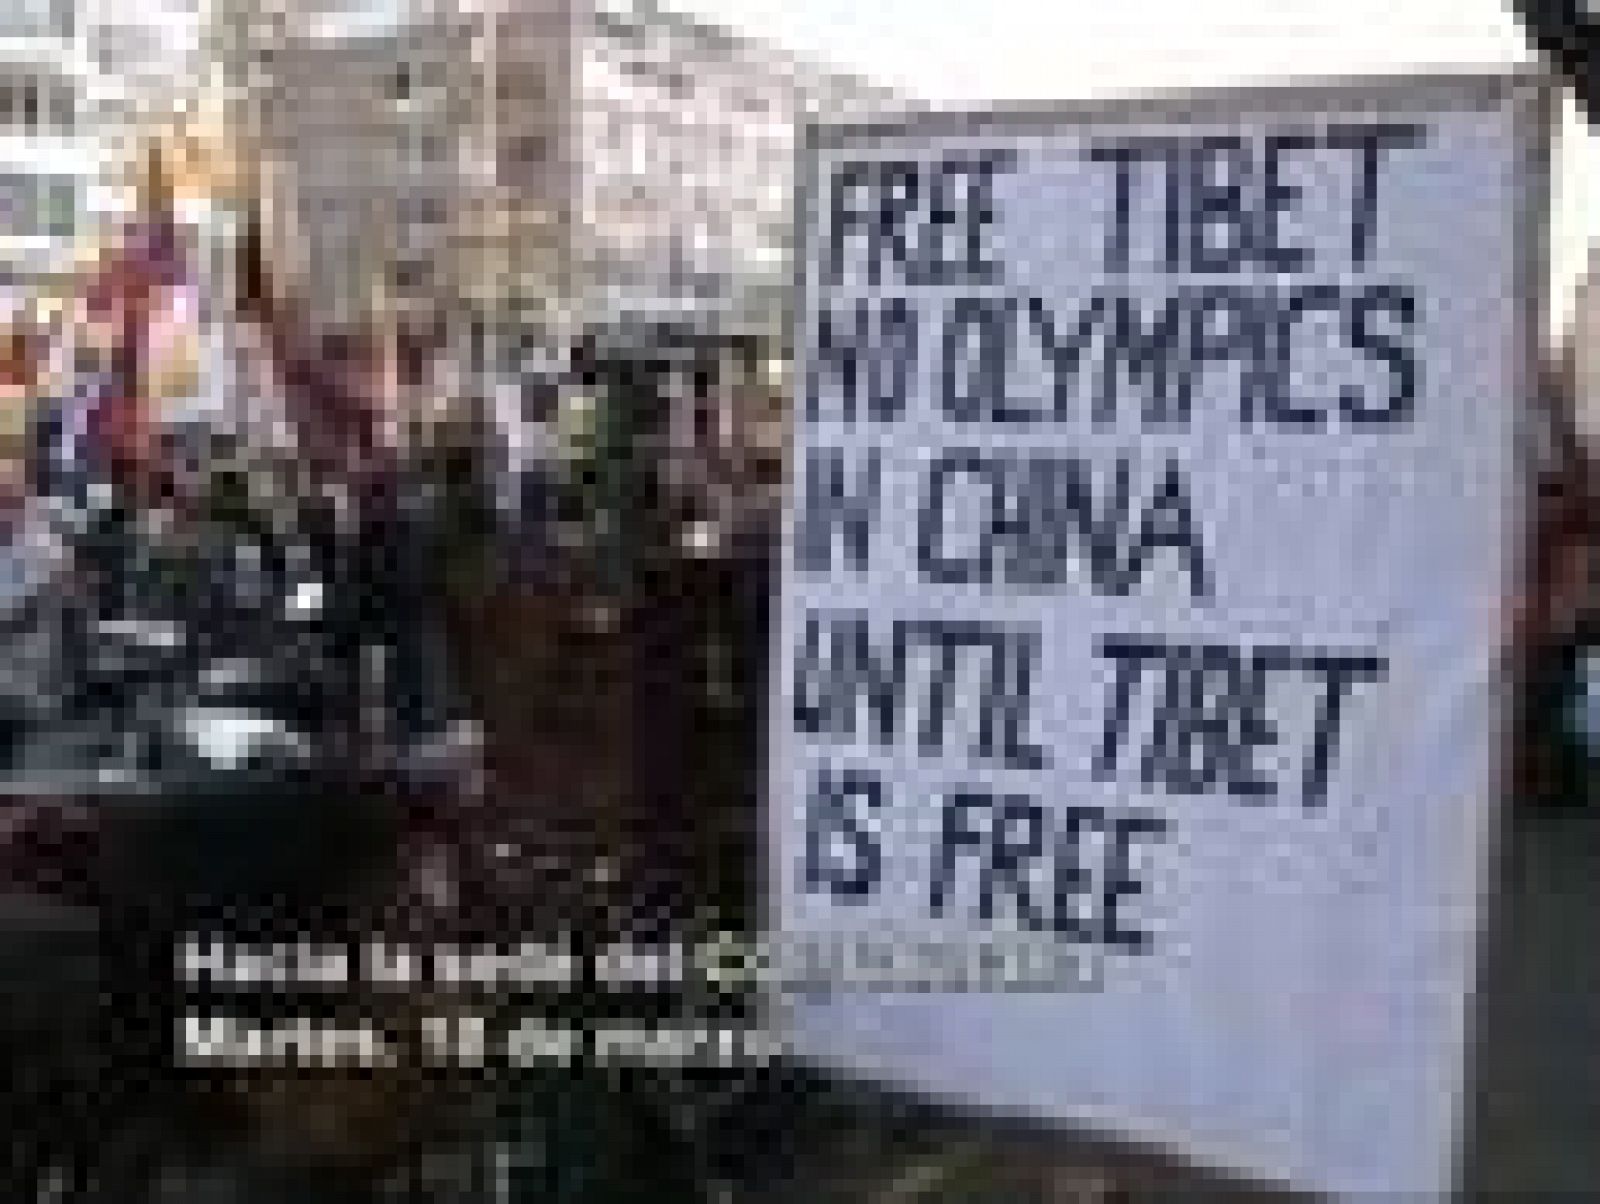 Manifestaciones de apoyo al Tíbet en Bruselas, frente a la sede del Consejo de Europa, y en Lausana, donde tiene su sede el COI